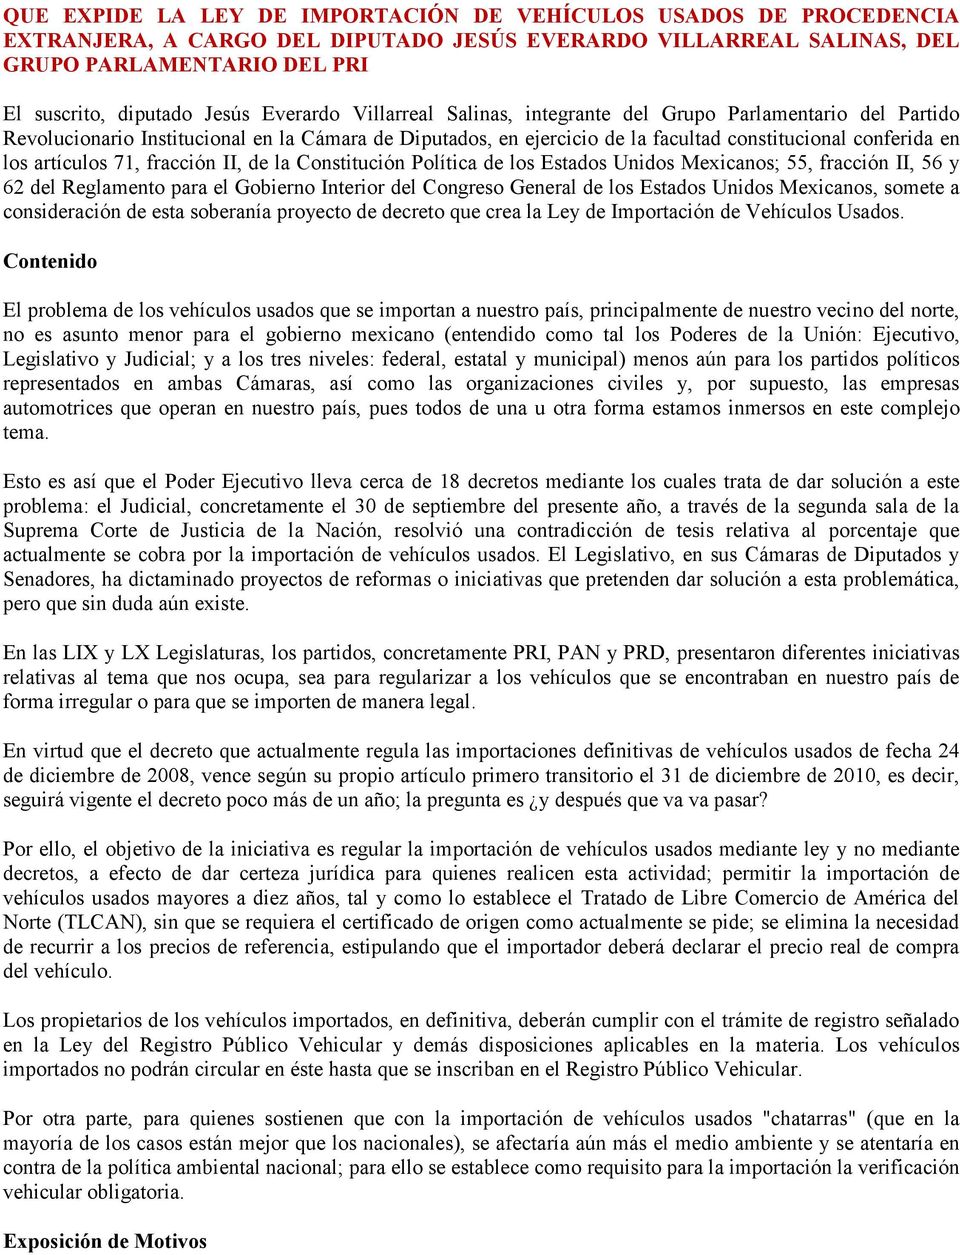 artículos 71, fracción II, de la Constitución Política de los Estados Unidos Mexicanos; 55, fracción II, 56 y 62 del Reglamento para el Gobierno Interior del Congreso General de los Estados Unidos